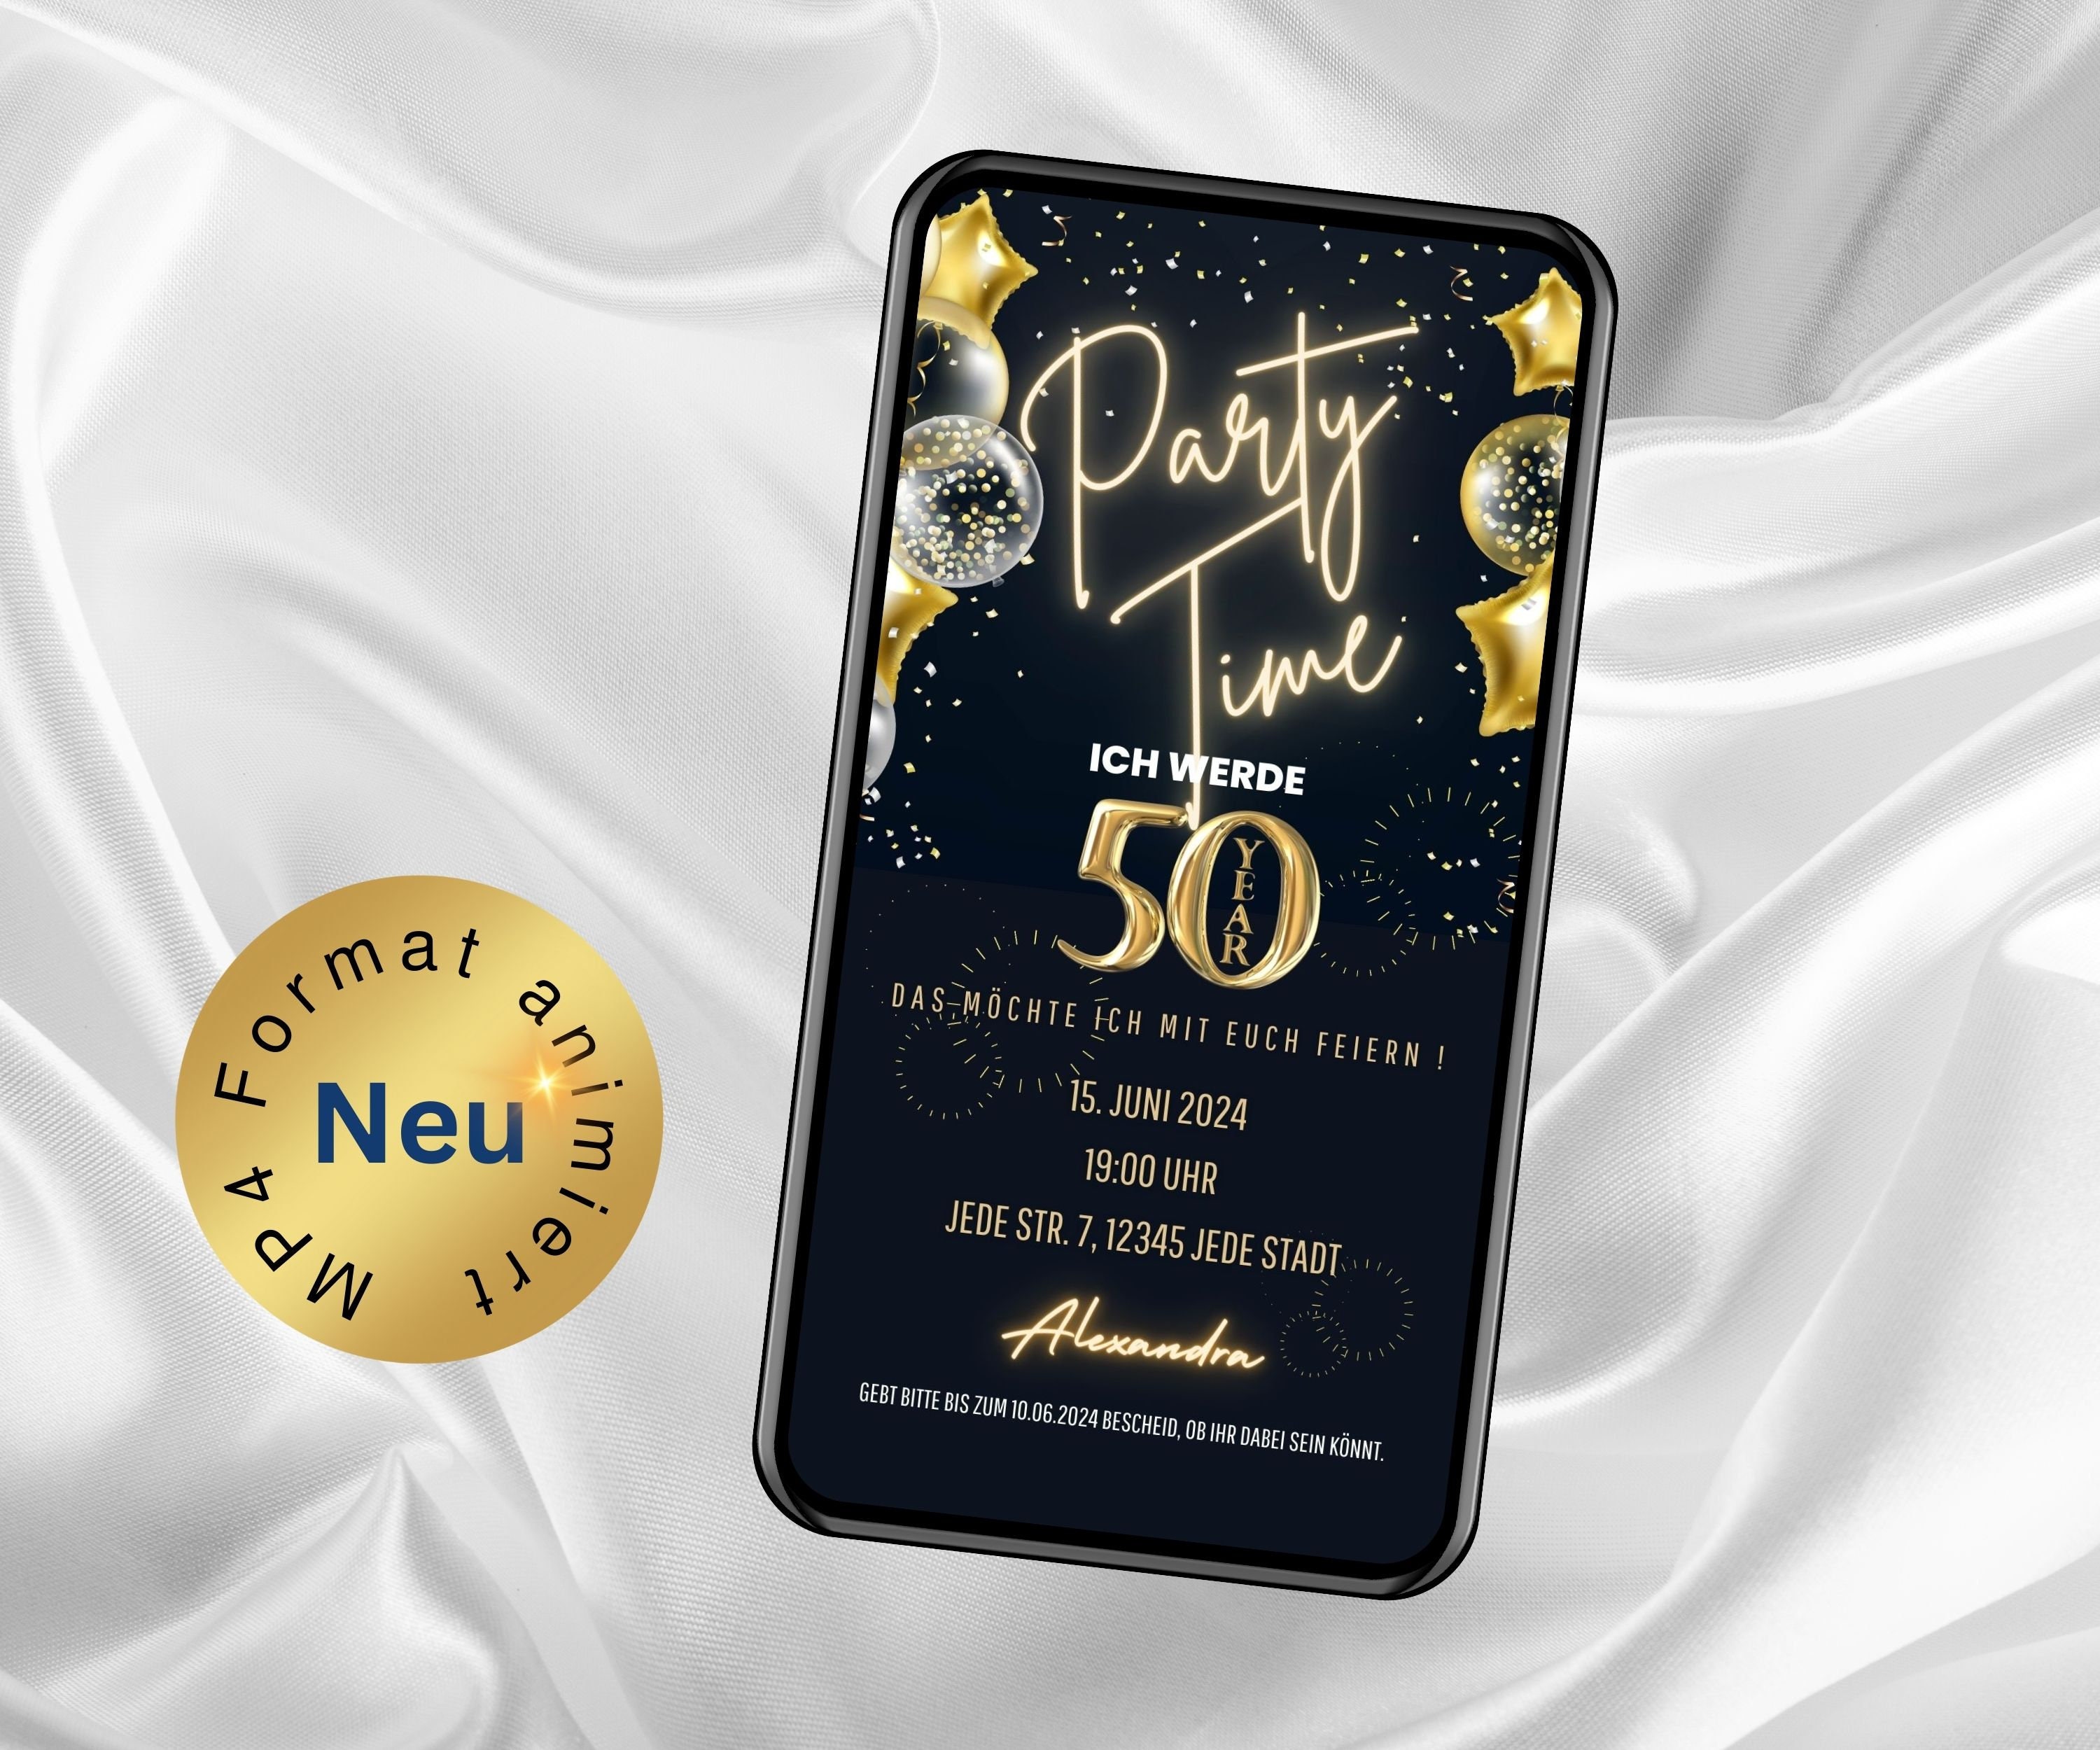 🎉🥂 Tarjeta de invitación 50 años #50años #invitacionesdigitales #par